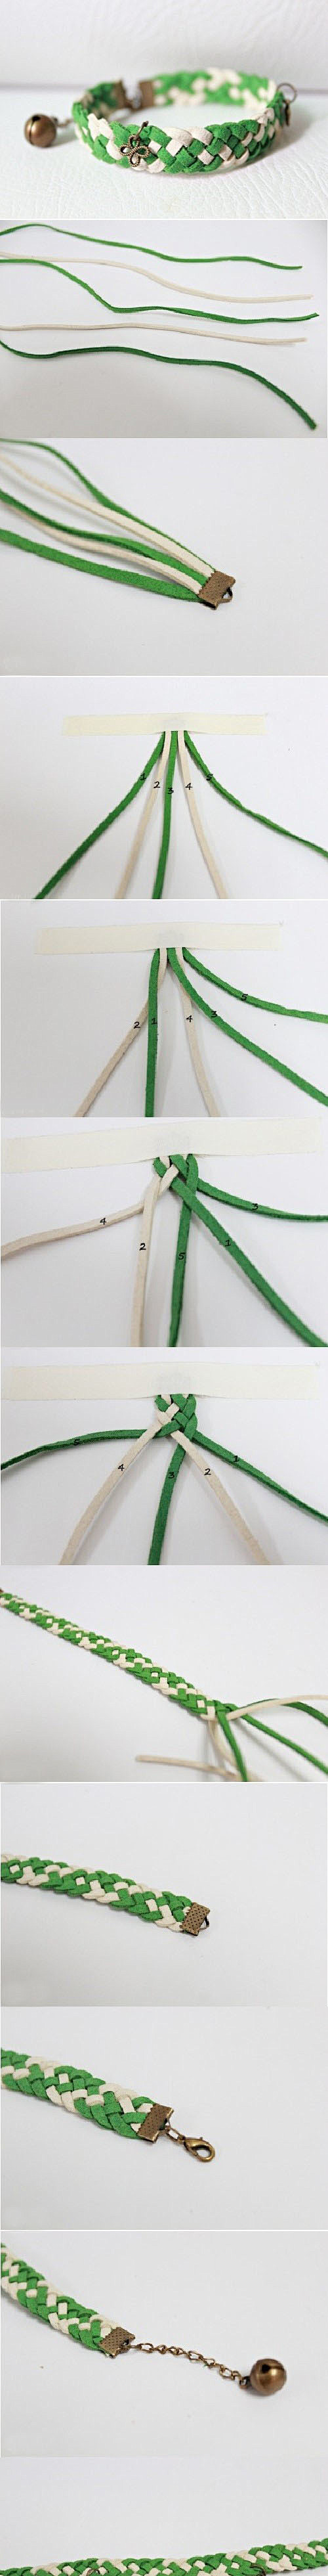 常见简单五股皮绳编织的宽手镯 手链 手绳...